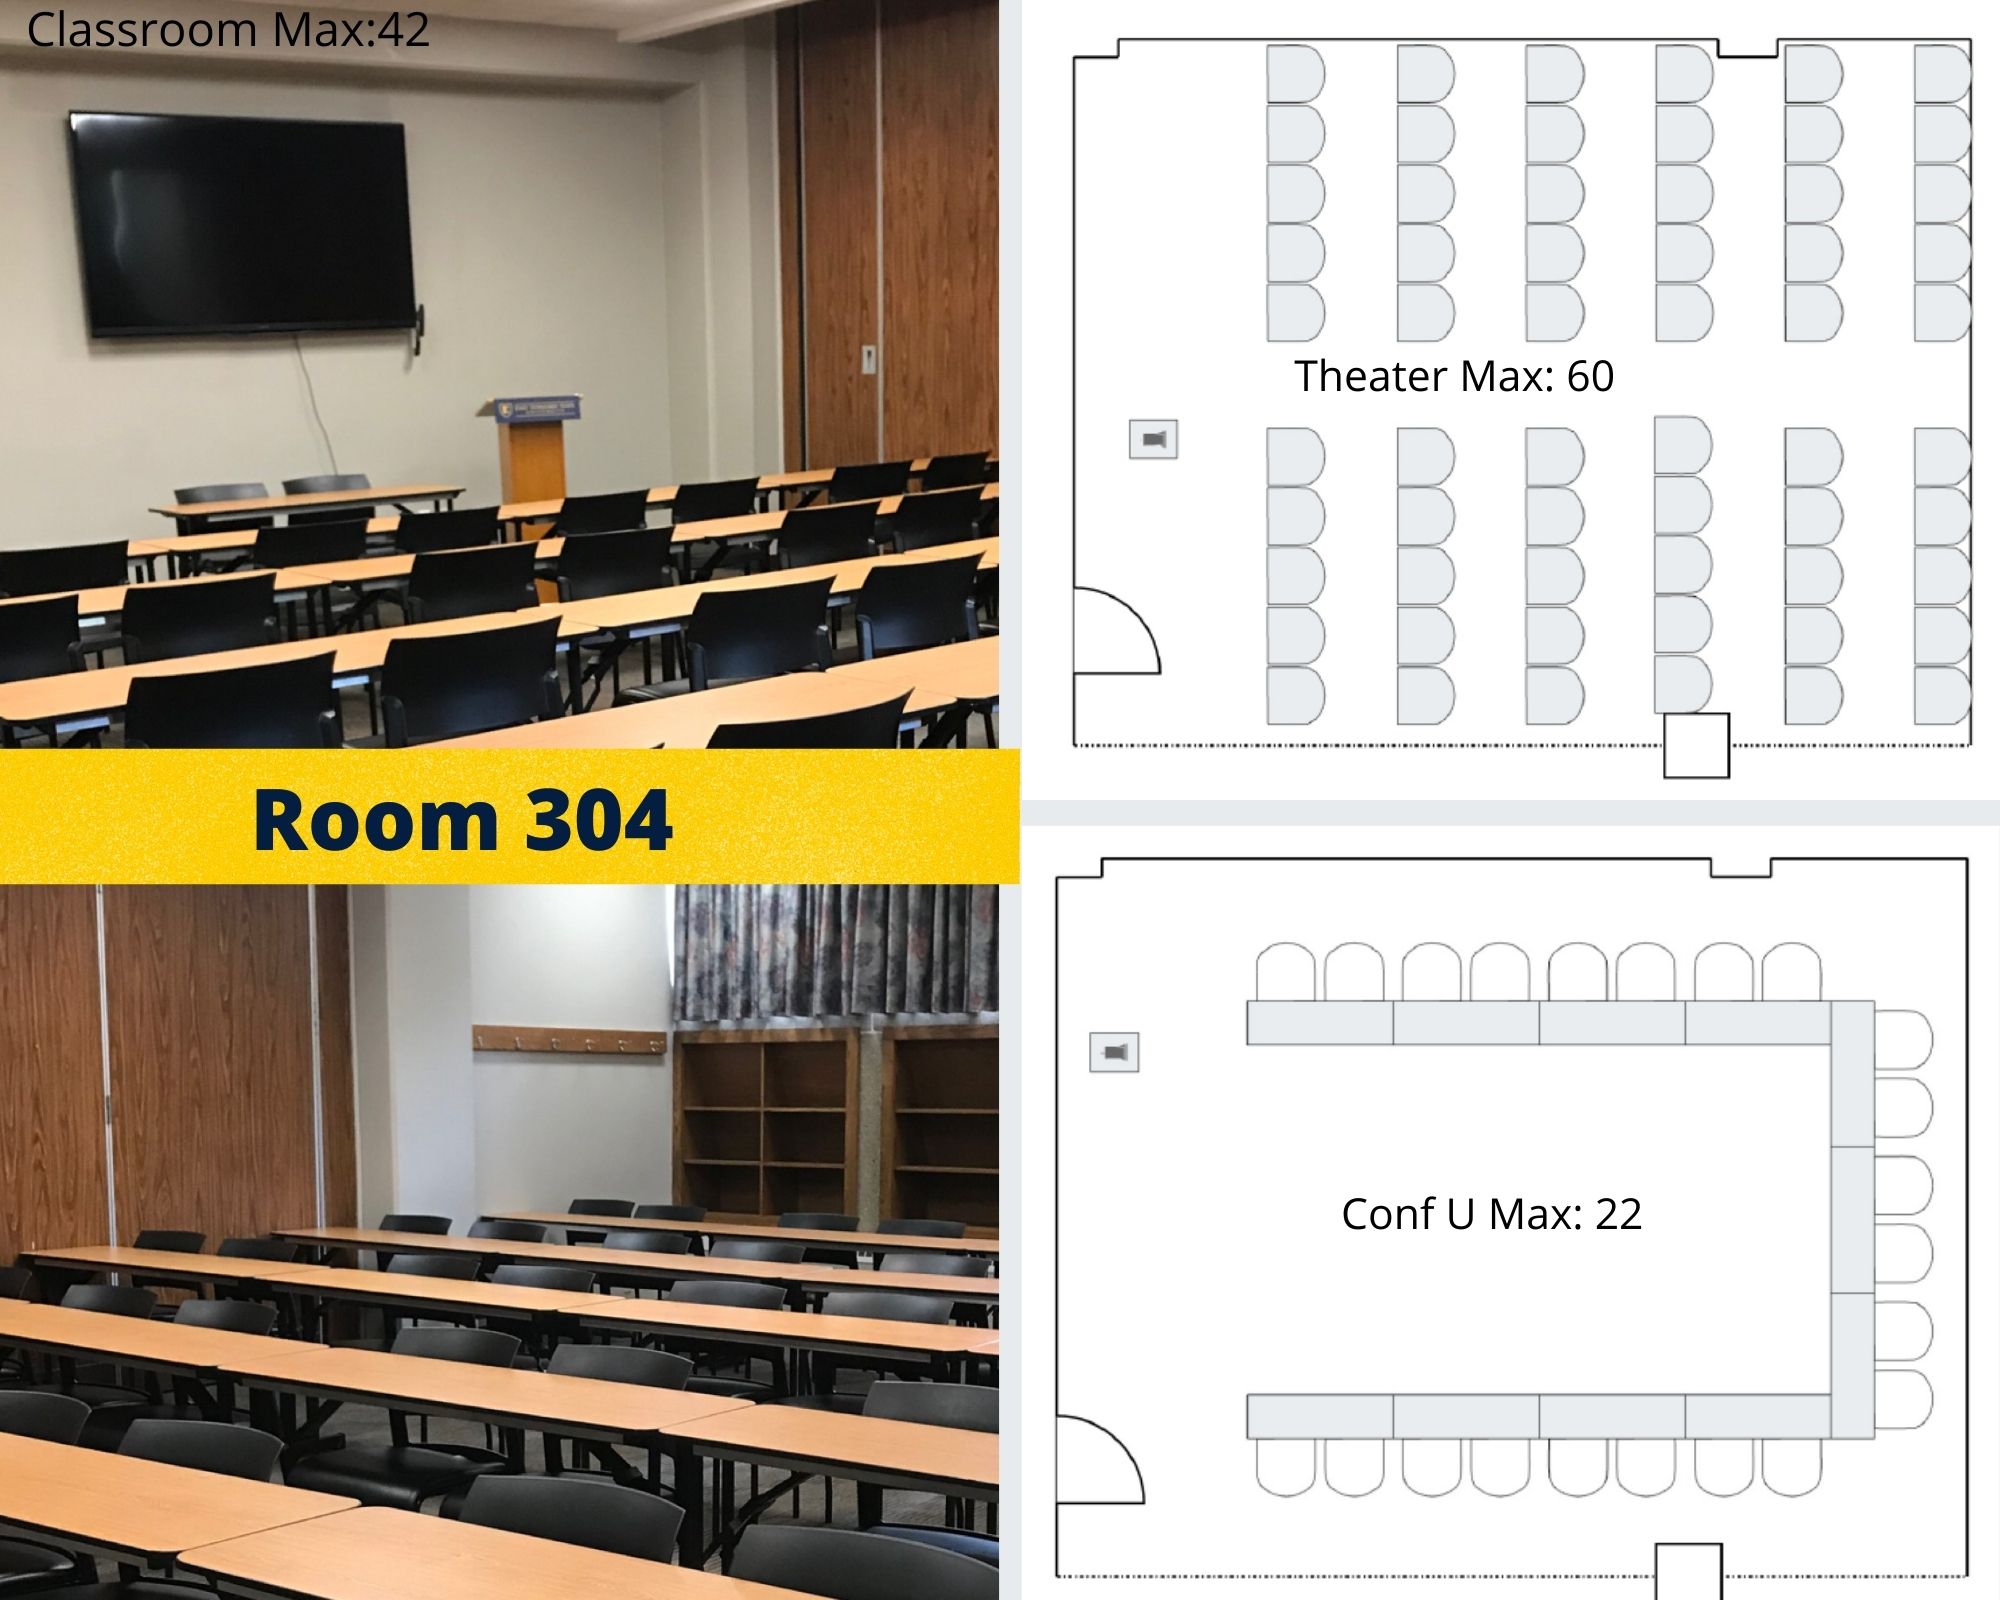 Meeting Room 304